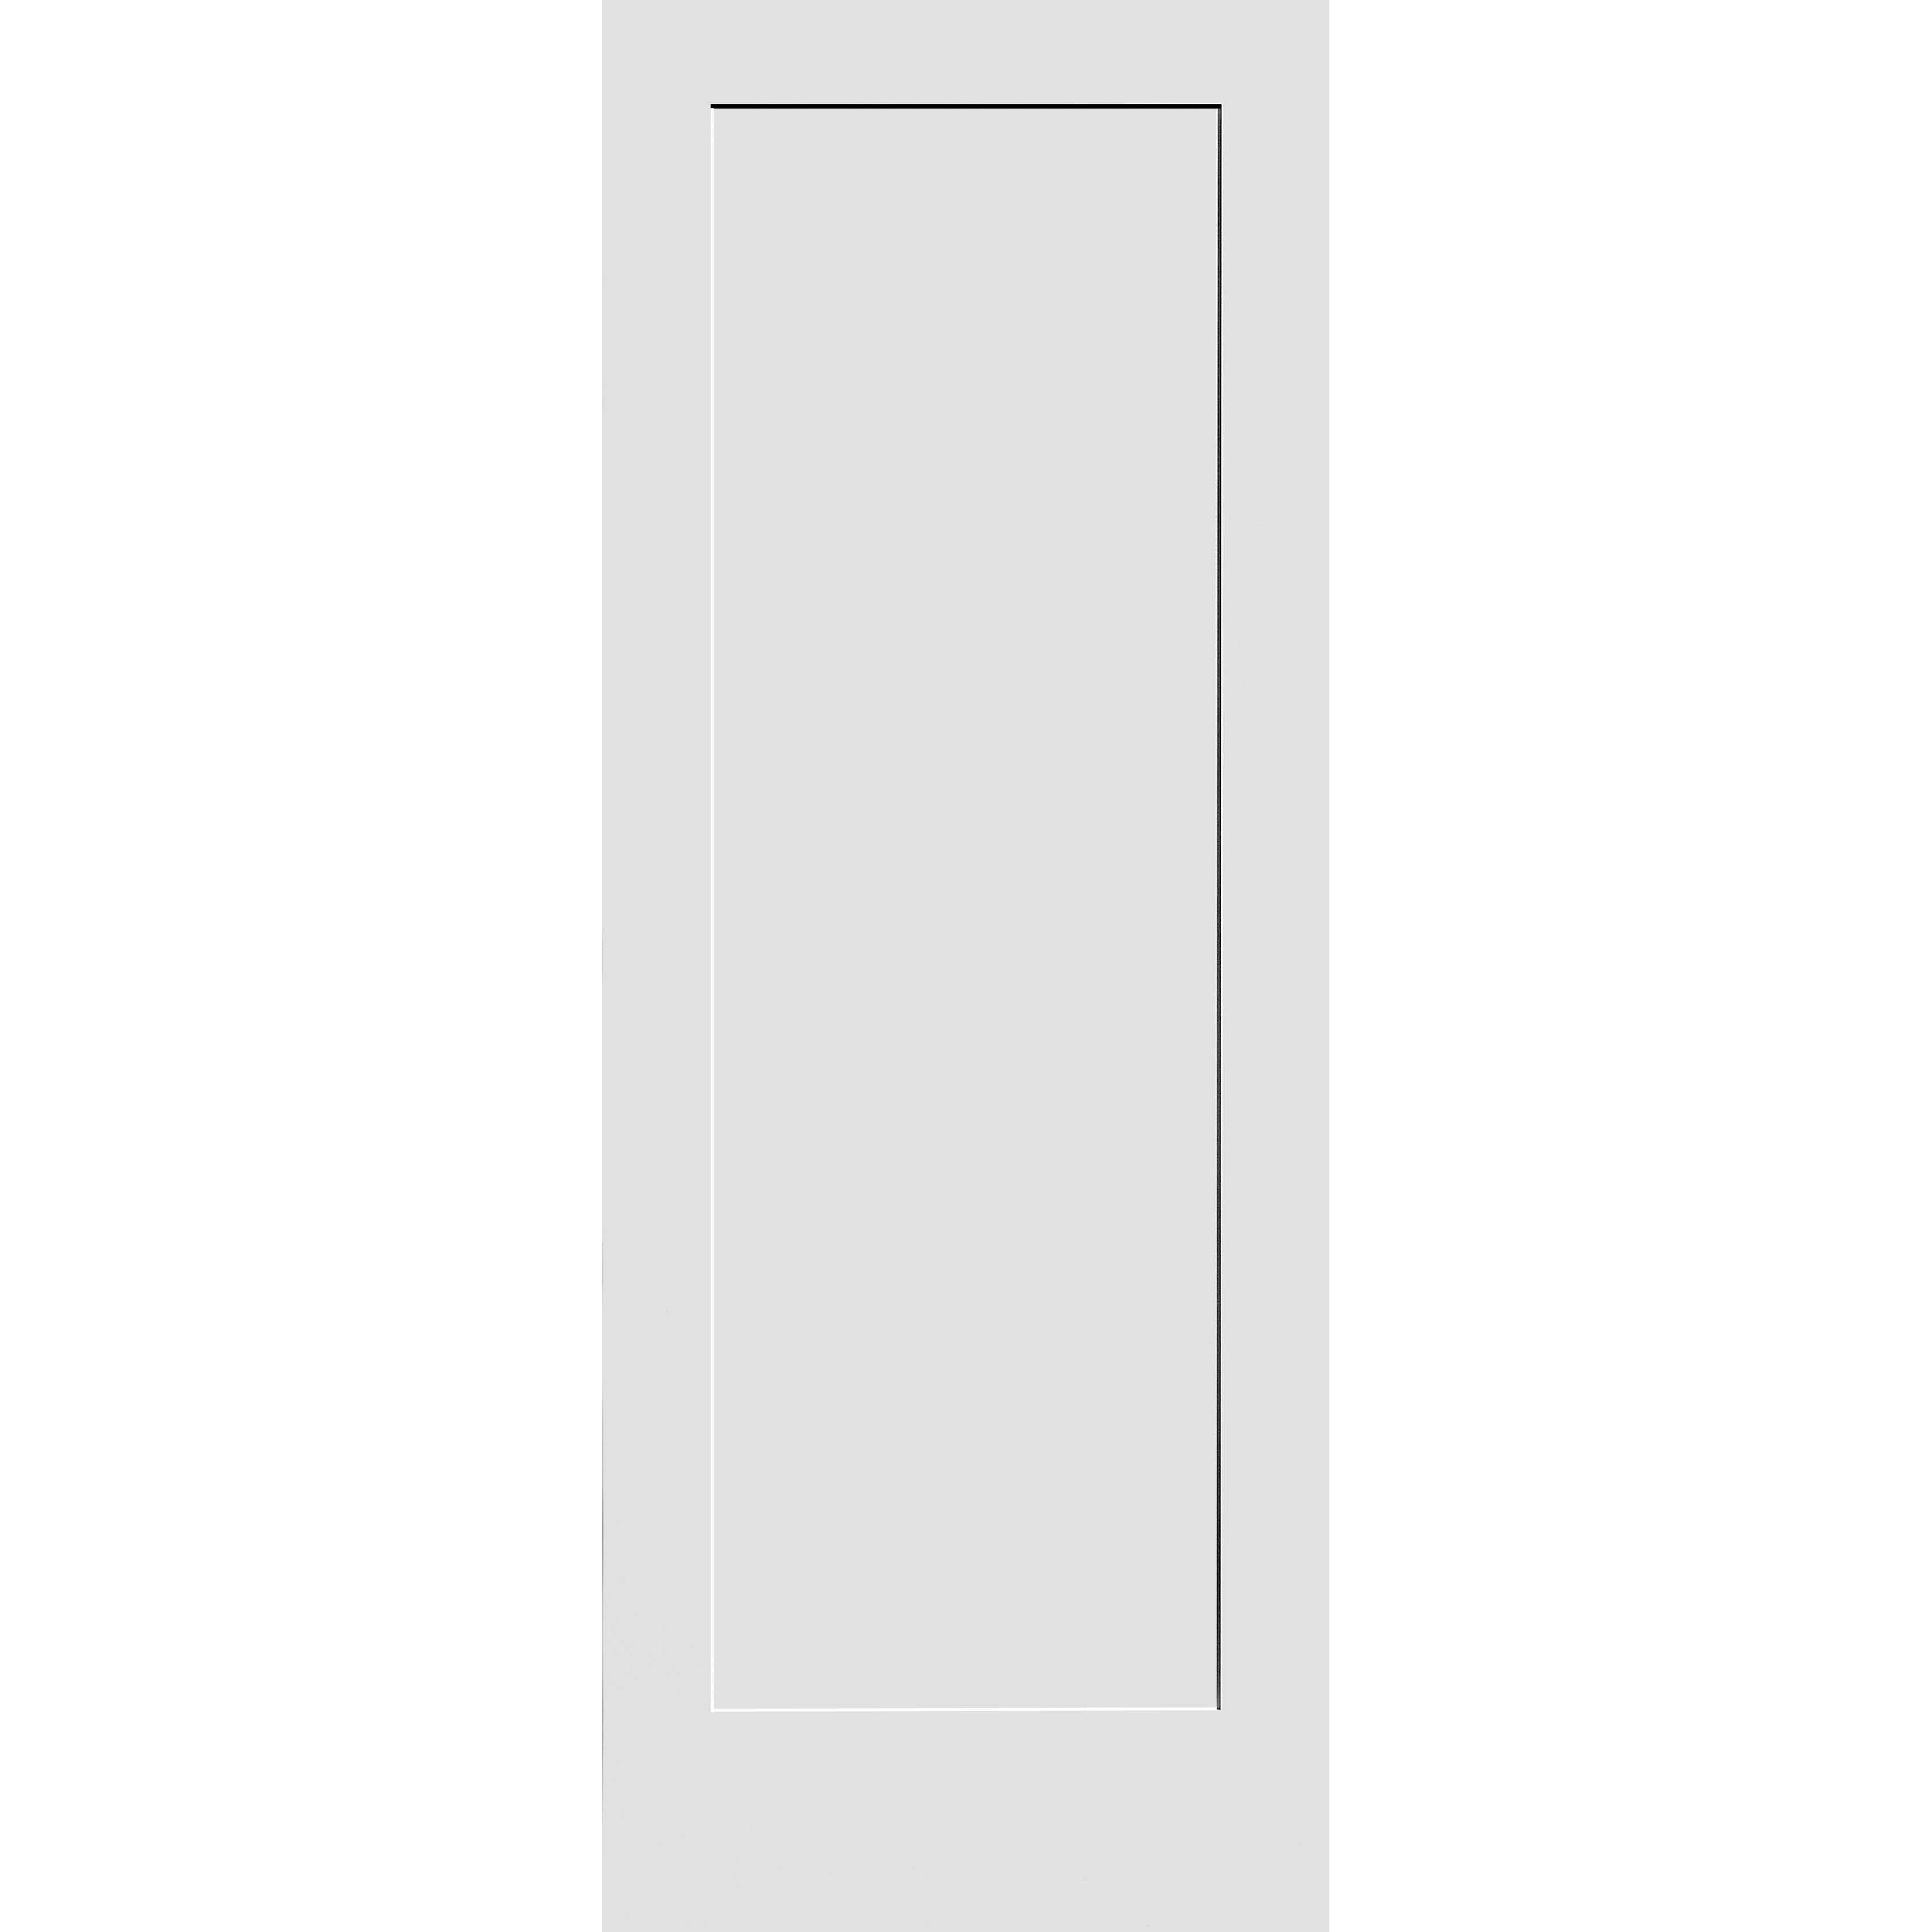 30X80 #8401 MDF PRIMED SHAKER PANEL INTERIOR DOOR